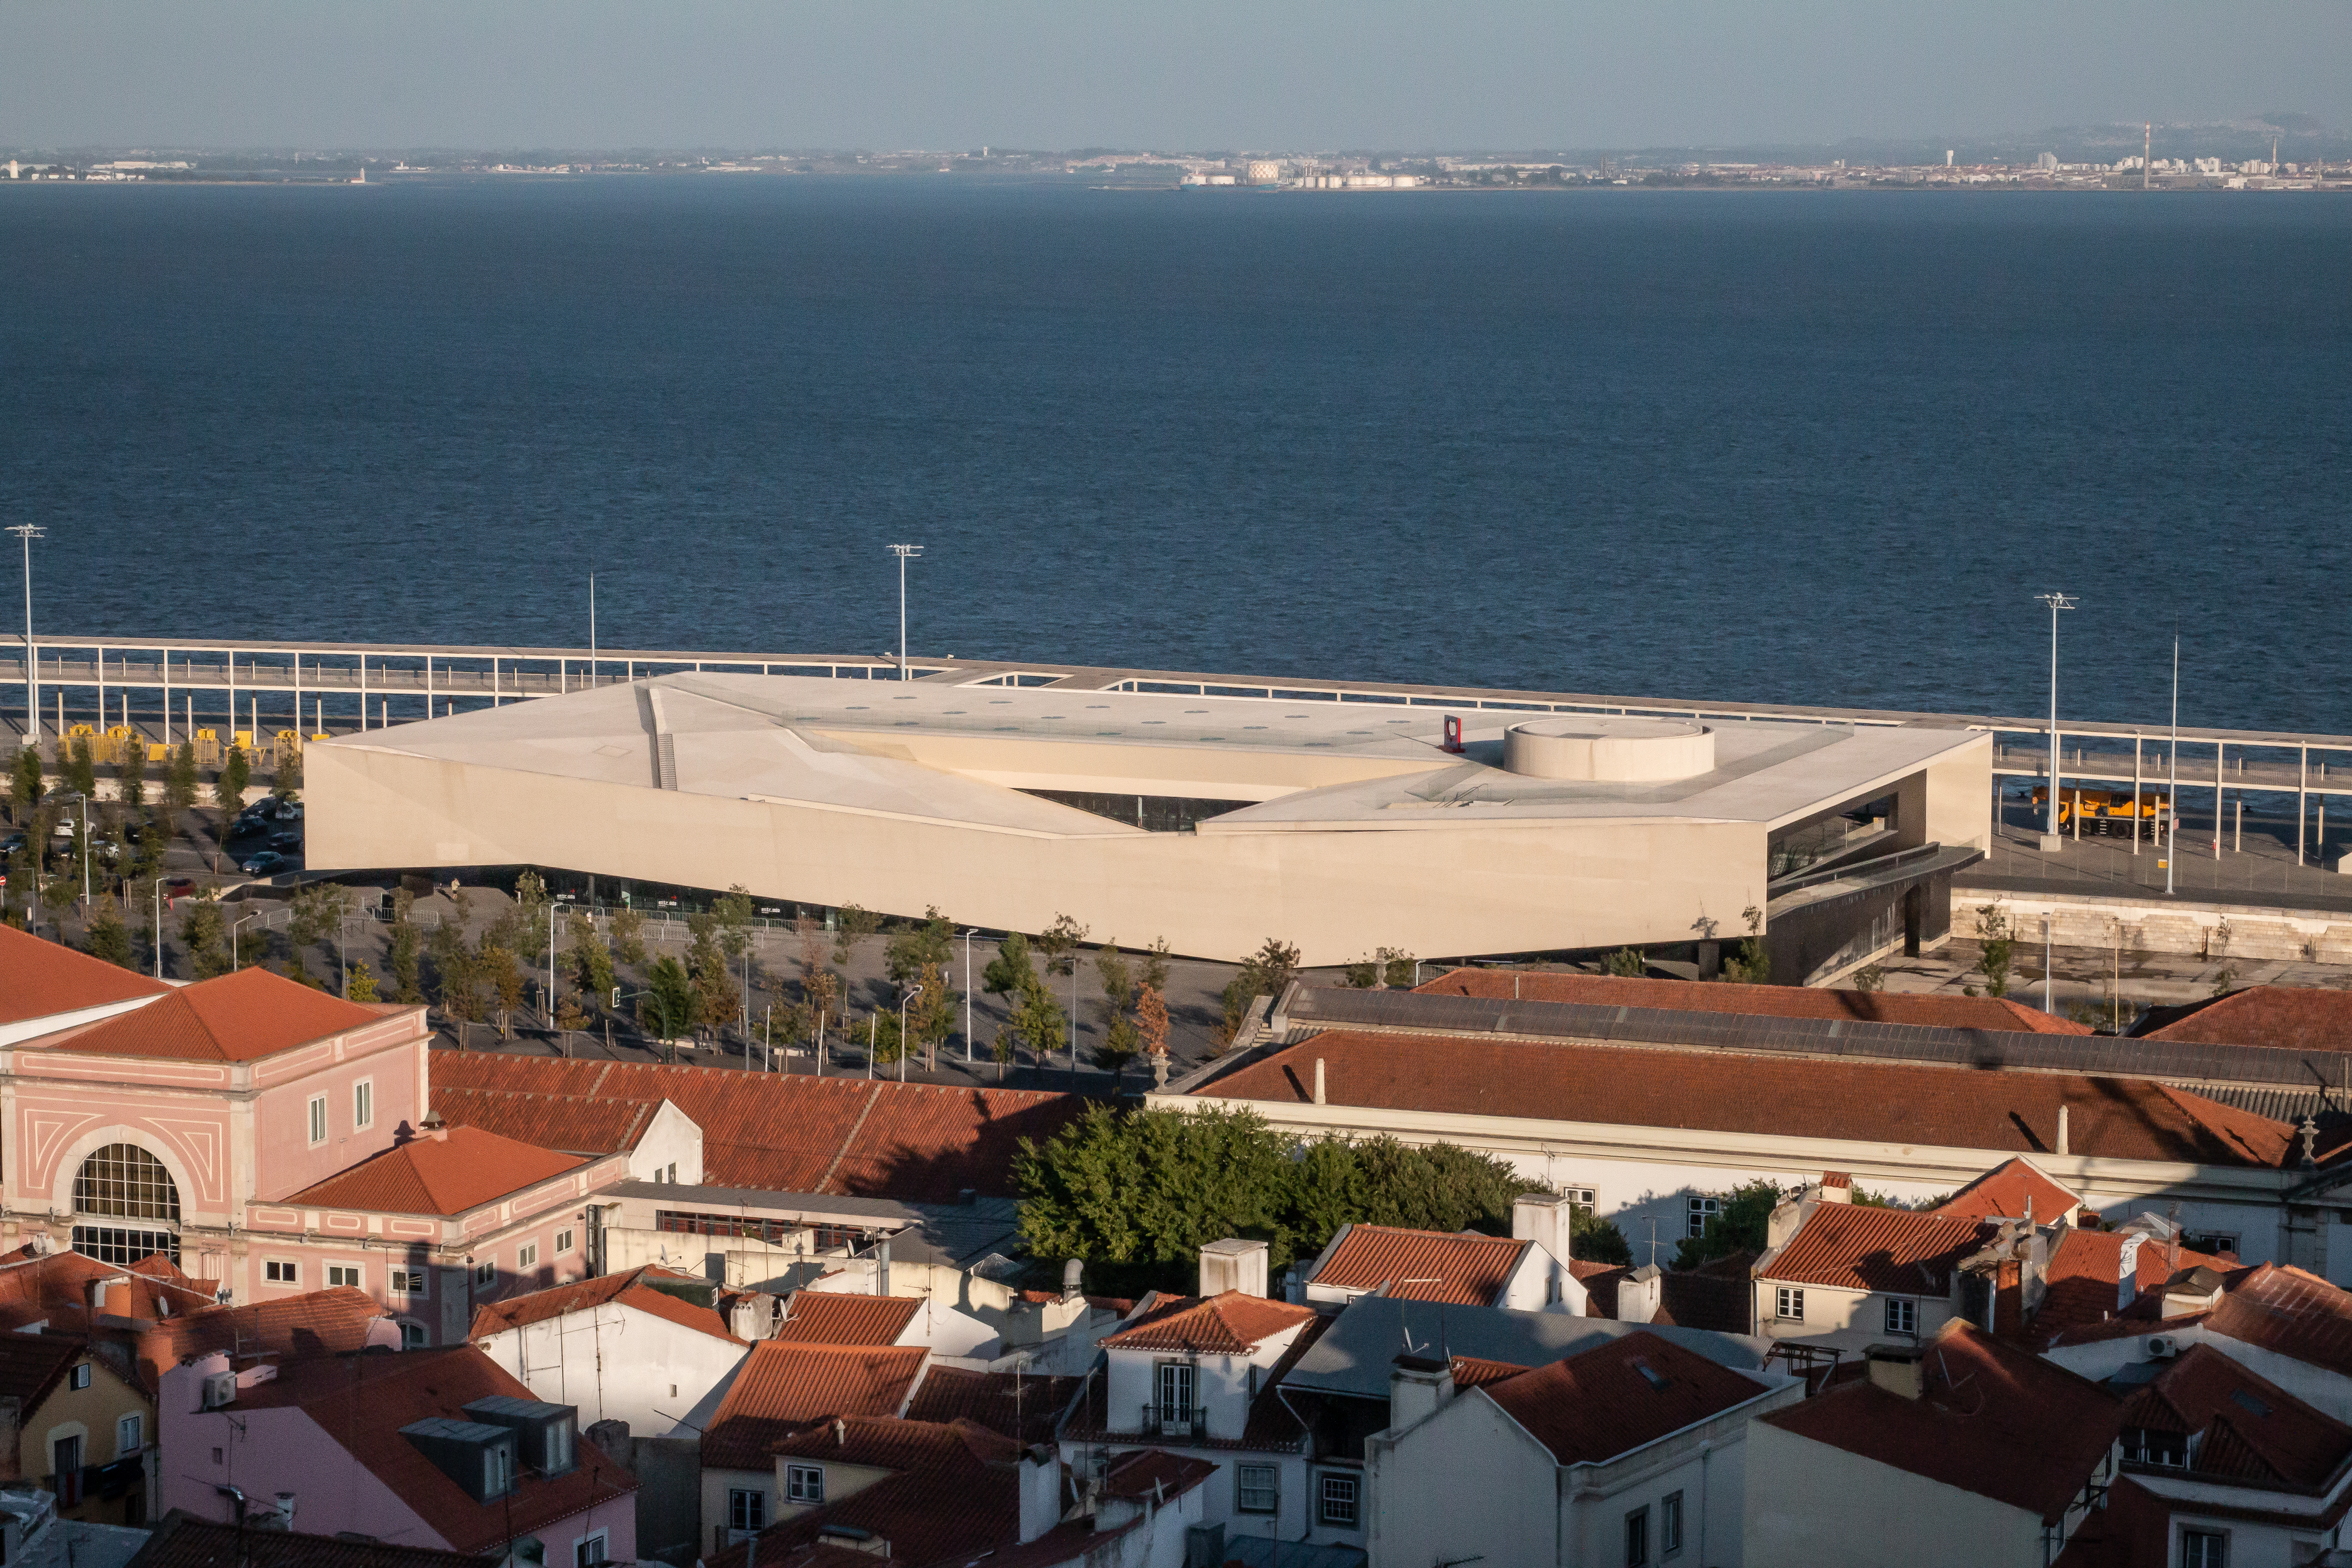 Lisbon Cruise Terminal – Terminal de Cruzeiros de Lisboa
